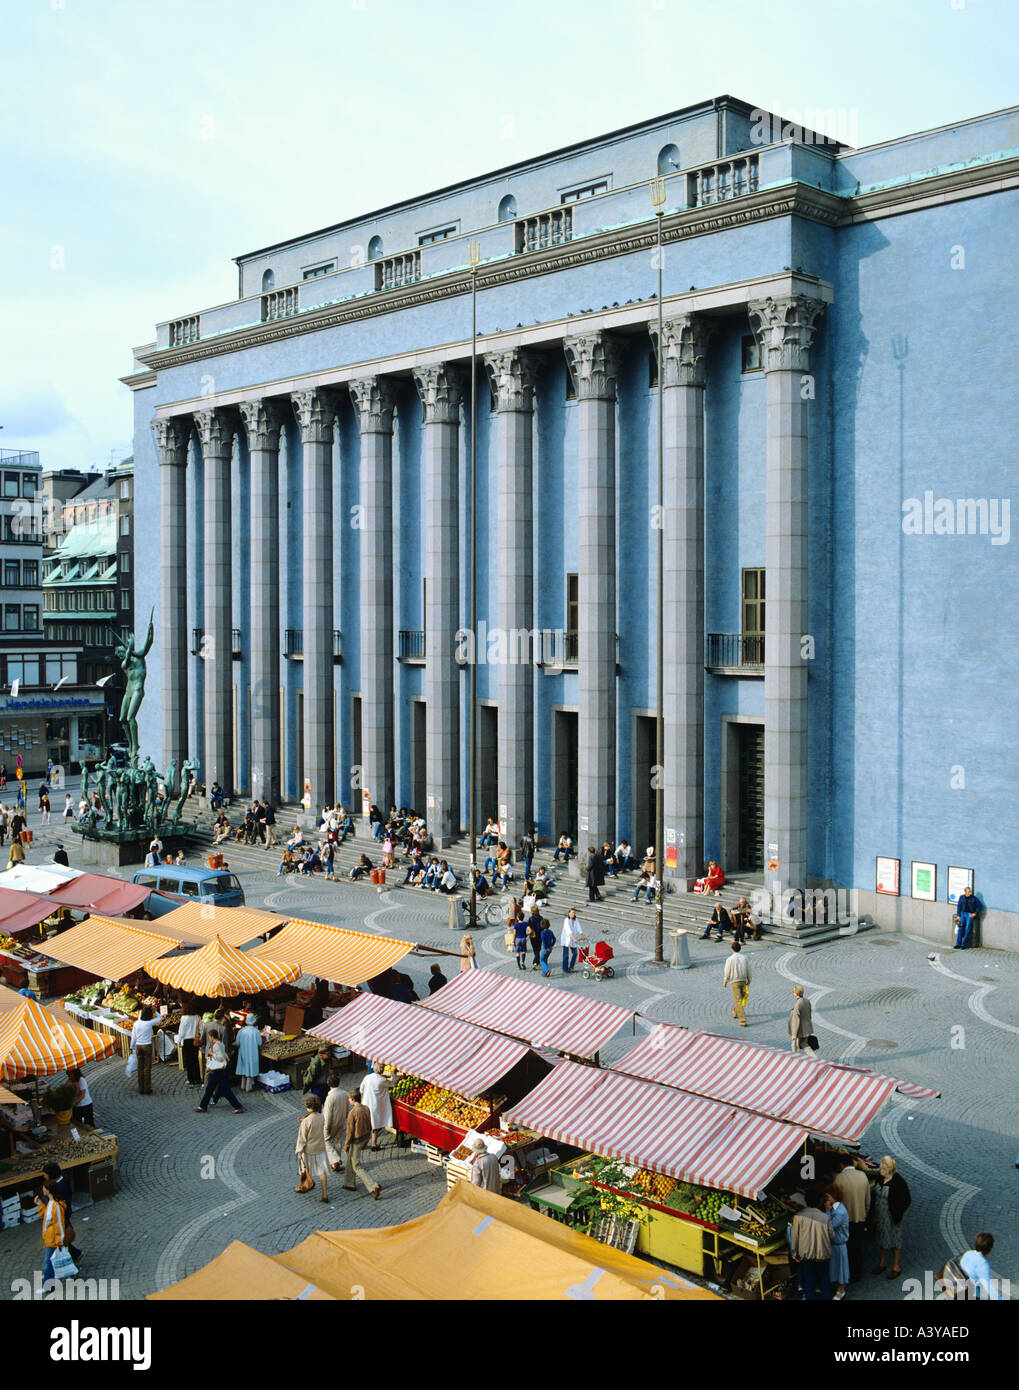 The Stockholm Concert Hall Stockholm Sweden Stock Photo